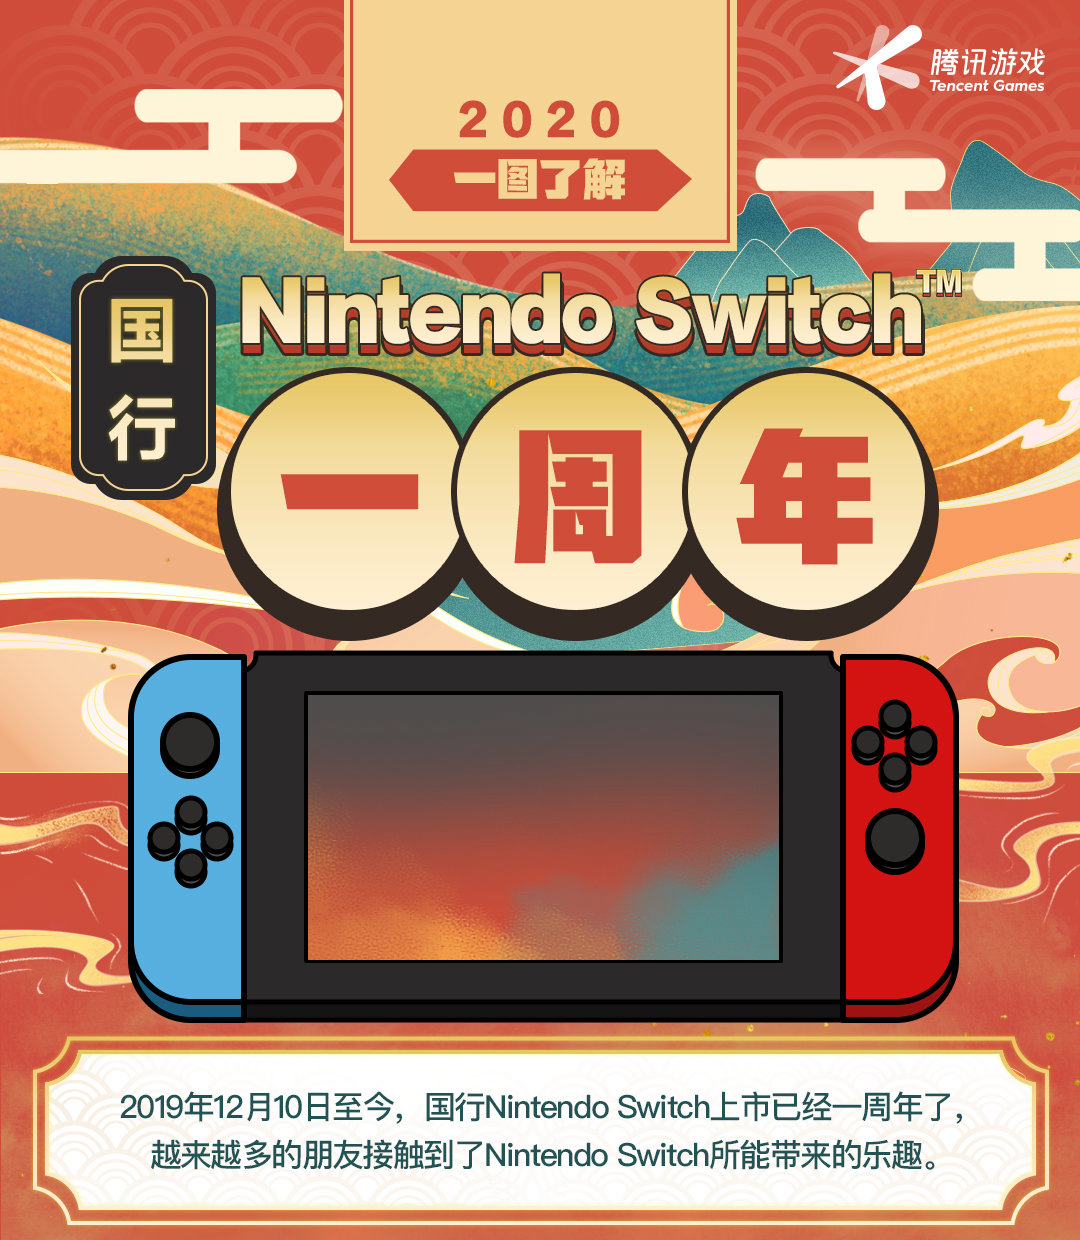 腾讯展示引进Switch一周年成果 共上线12款游戏